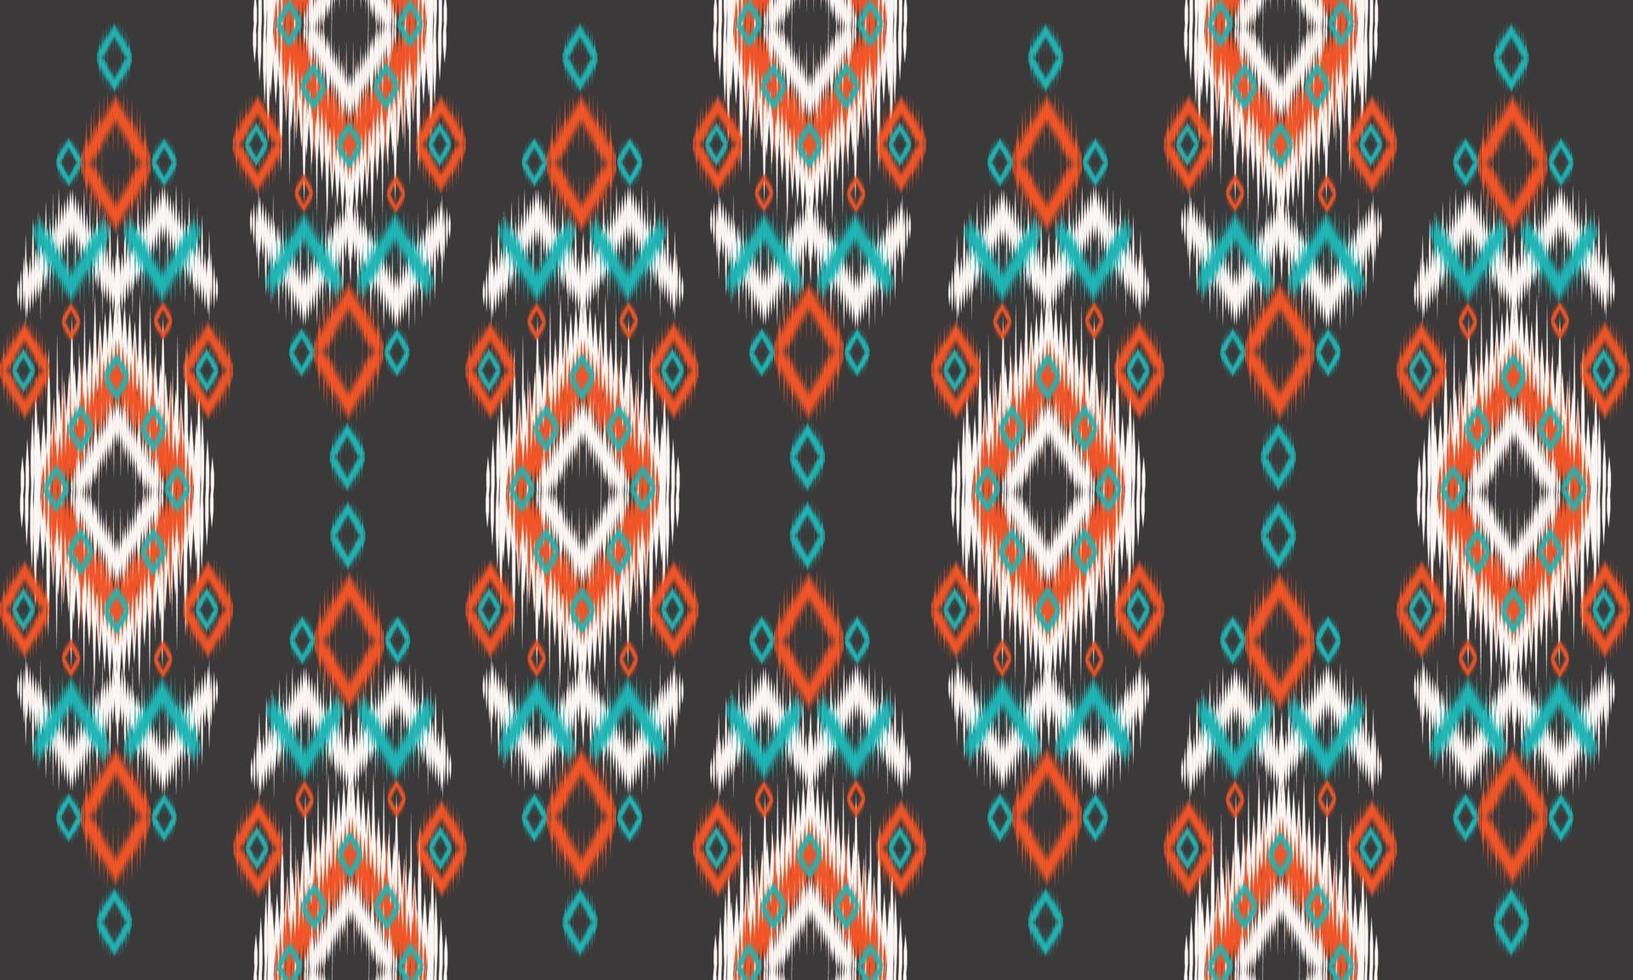 geométrico étnico oriental ikat padrão design tradicional para plano de fundo, tapete, papel de parede, roupas, embrulho, batik, tecido, ilustração vetorial. estilo bordado. vetor